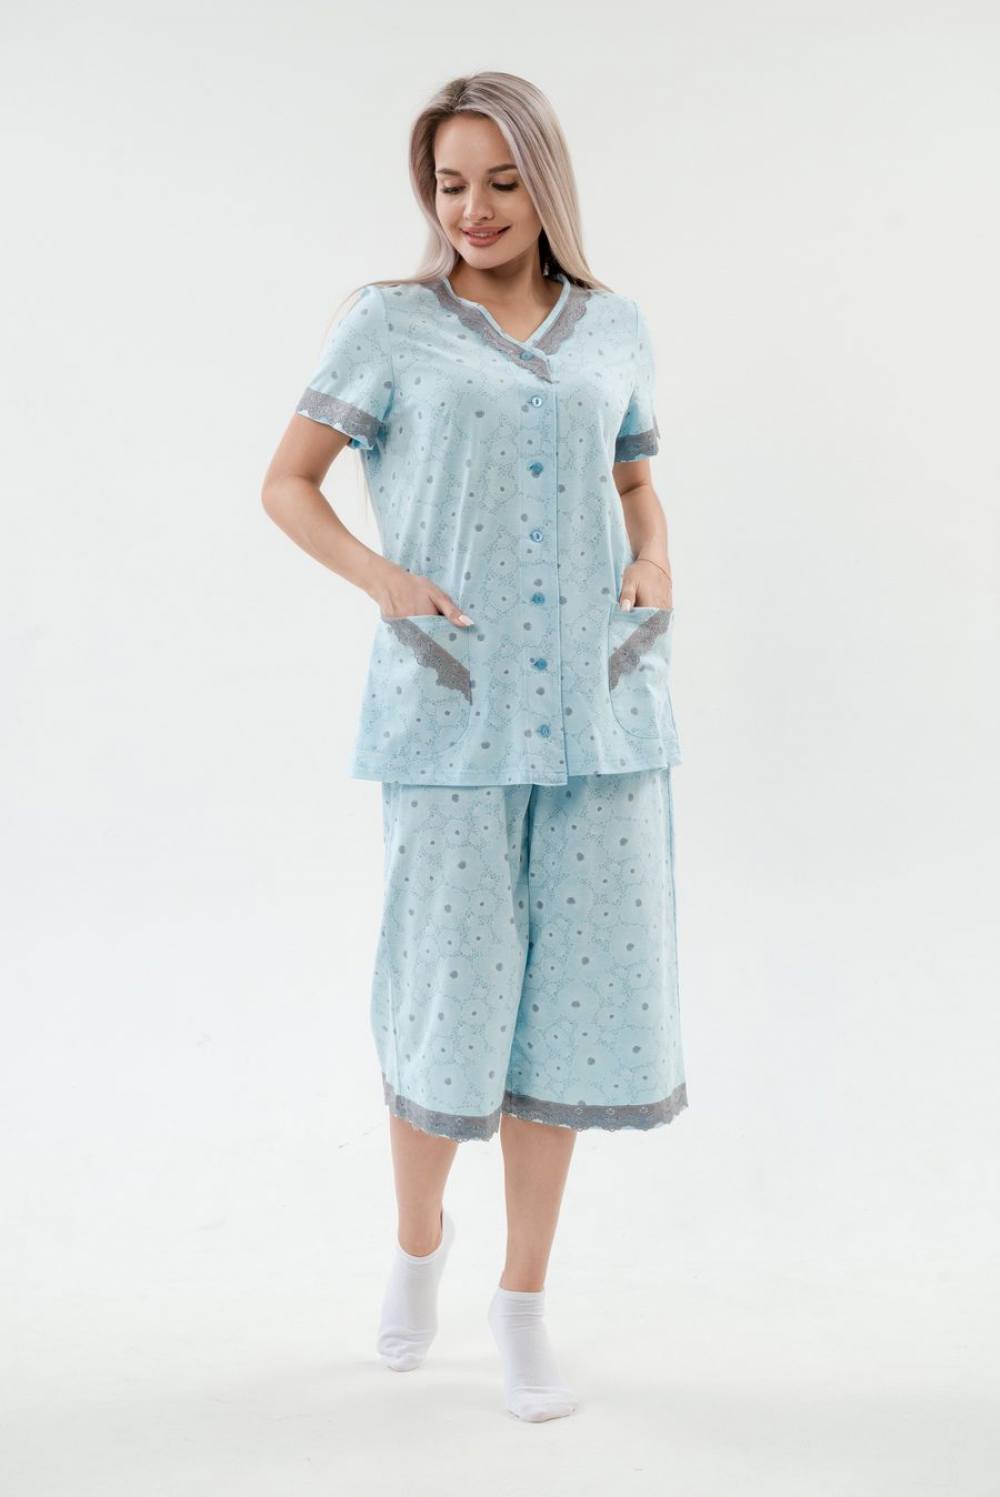 Пижама женская с бриджами. Артикул 000005443